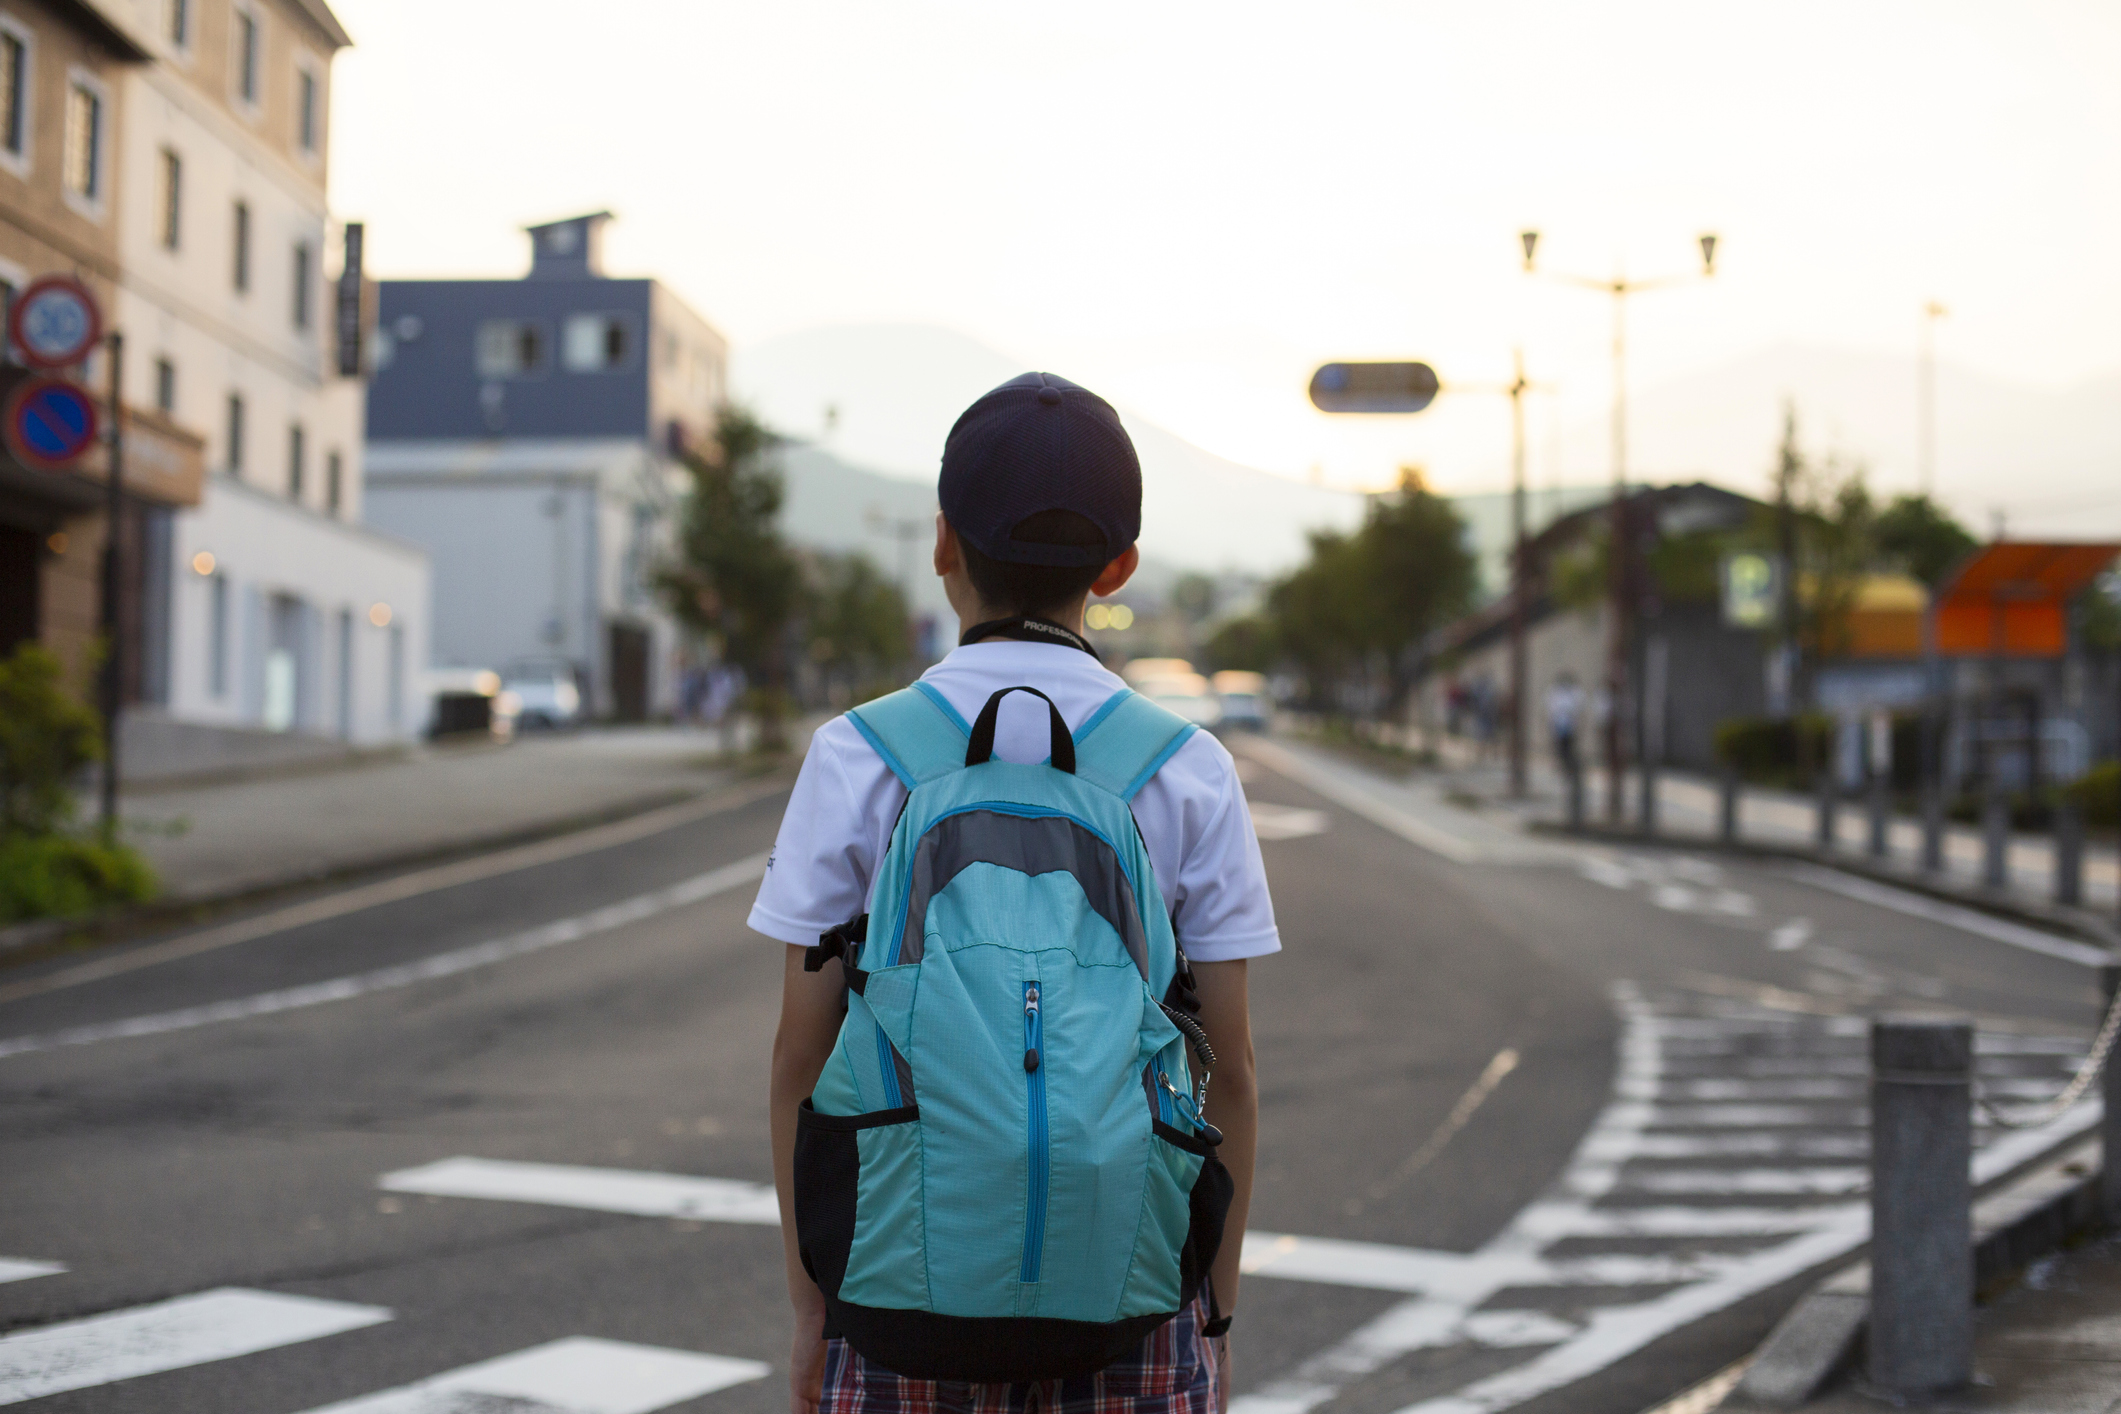 Garçon rentrant de l'école à pied | Source : Getty Images